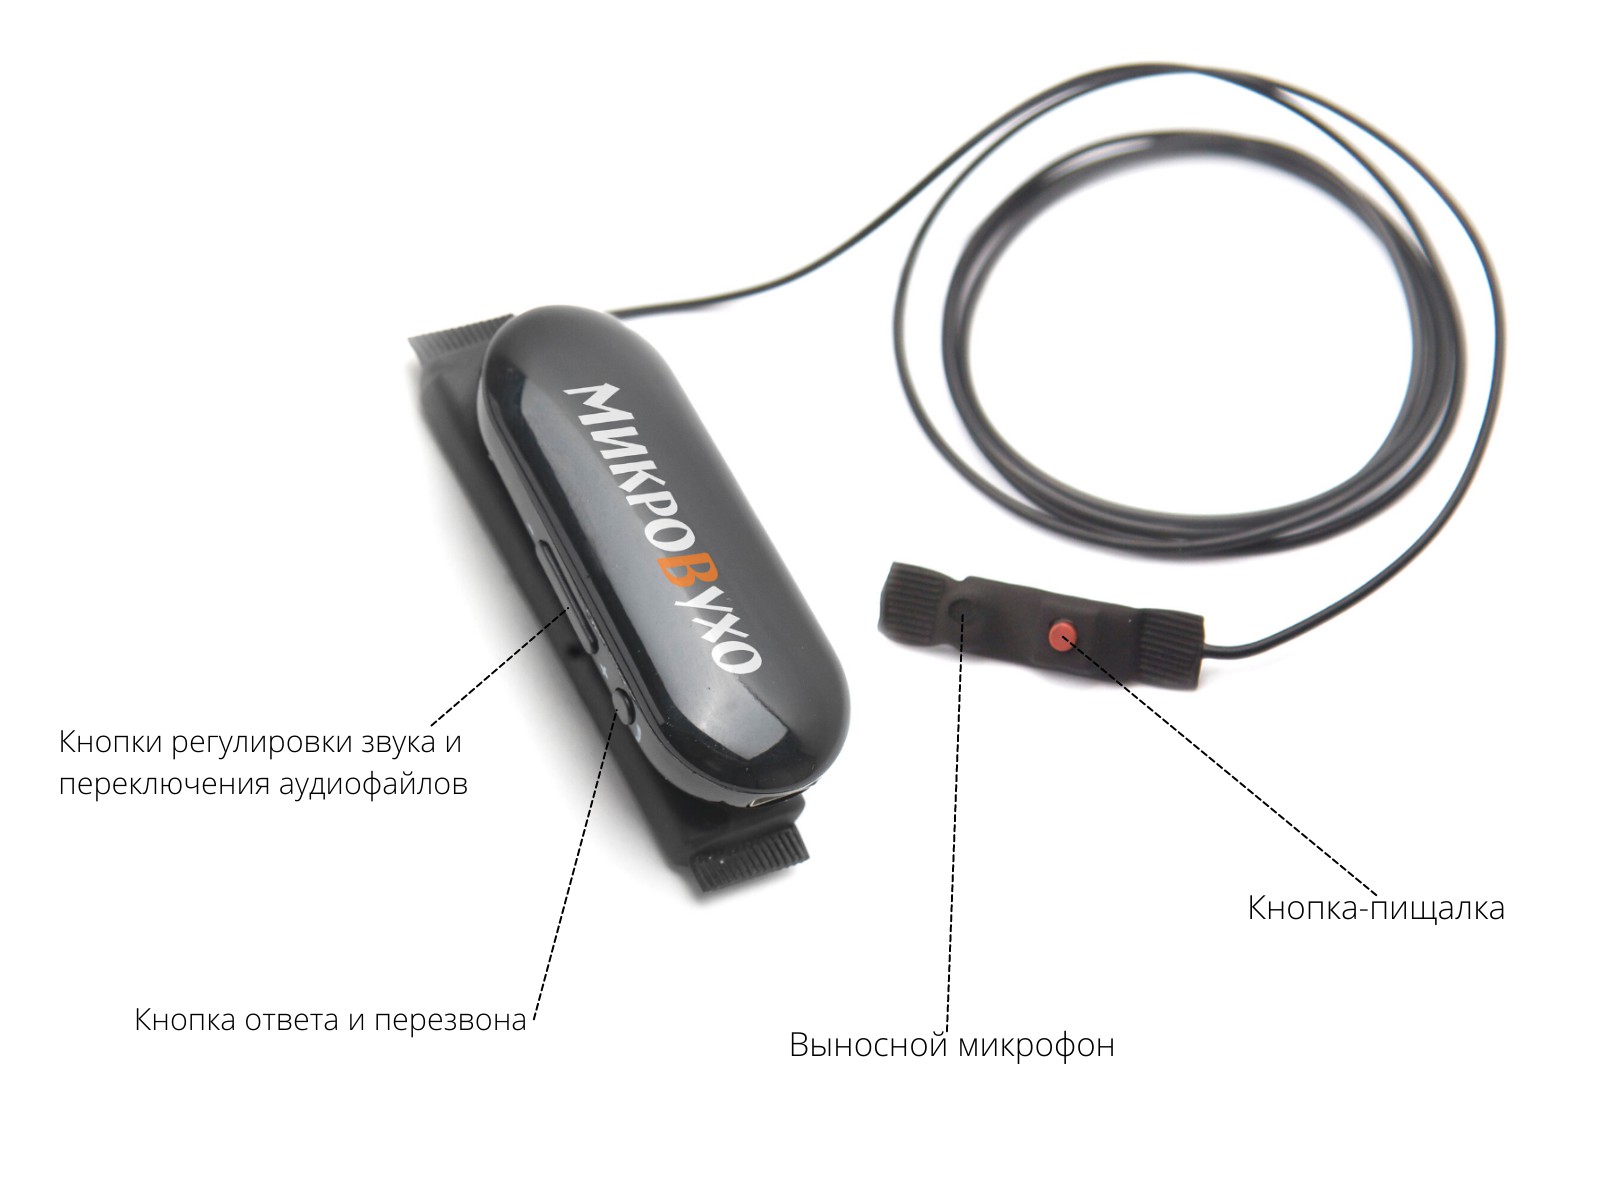 Универсальная гарнитура Bluetooth Box Pro Plus c капсулой Premium и магнитами 2 мм - изображение 18